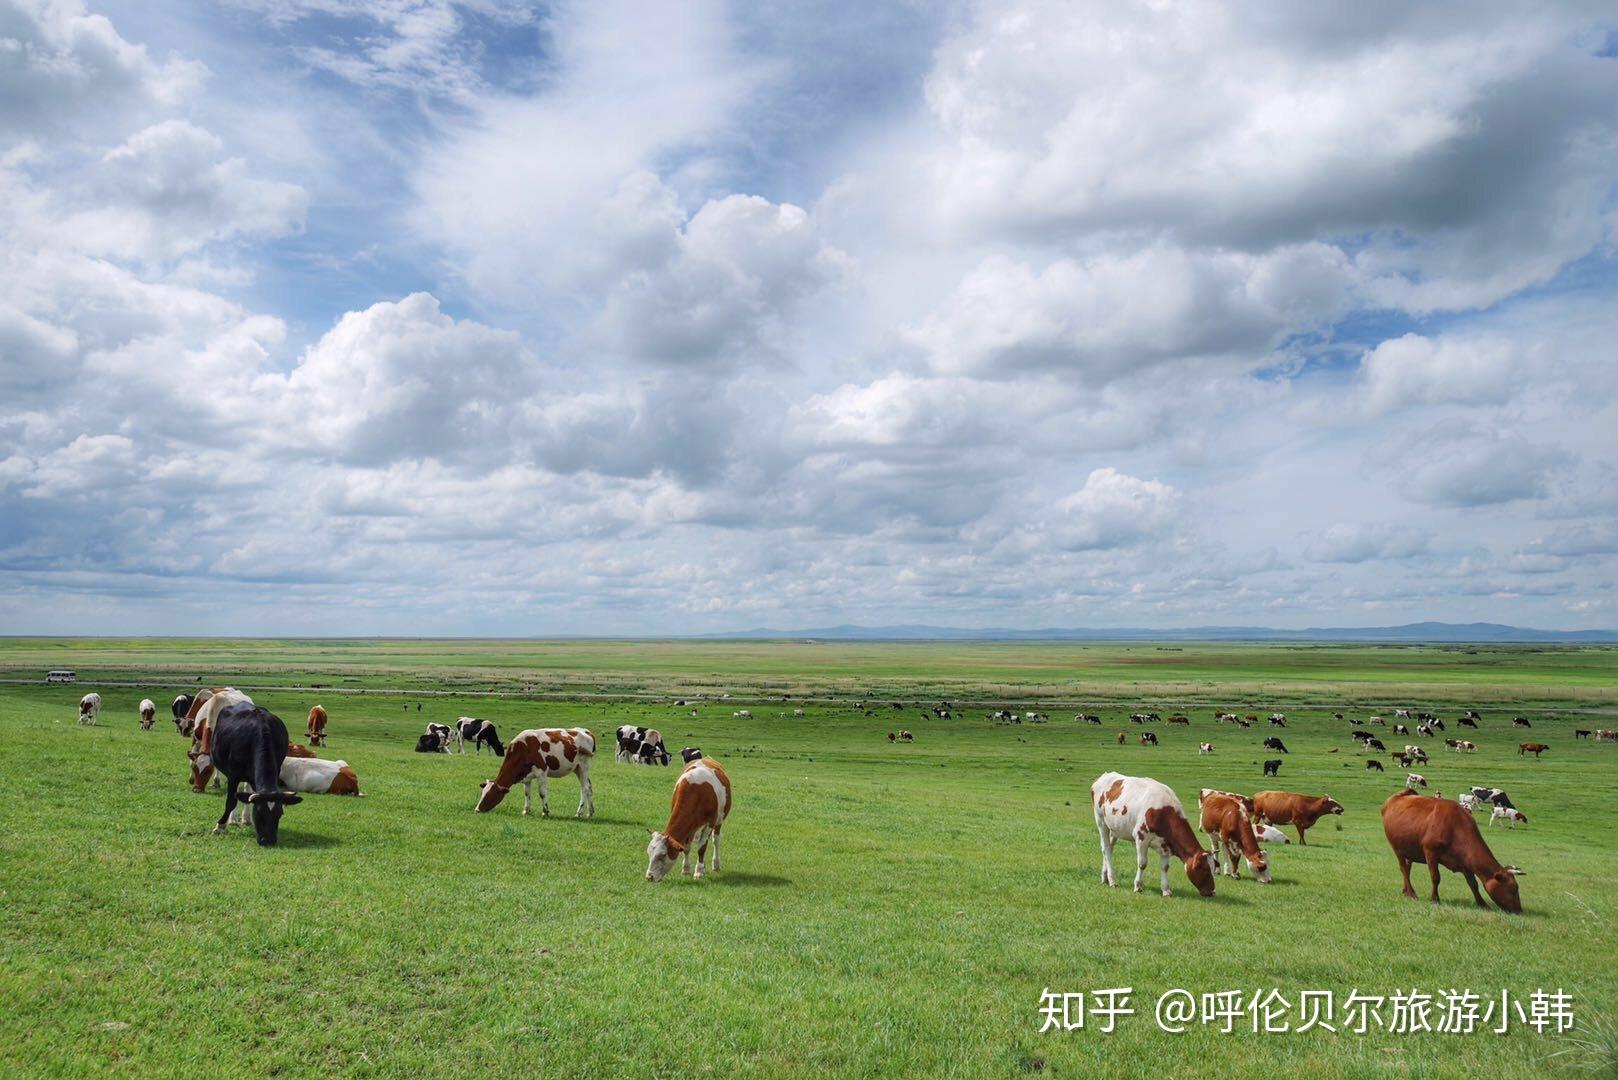 去内蒙古旅游有哪些好玩的地方可以推荐？推荐理由？ - 知乎